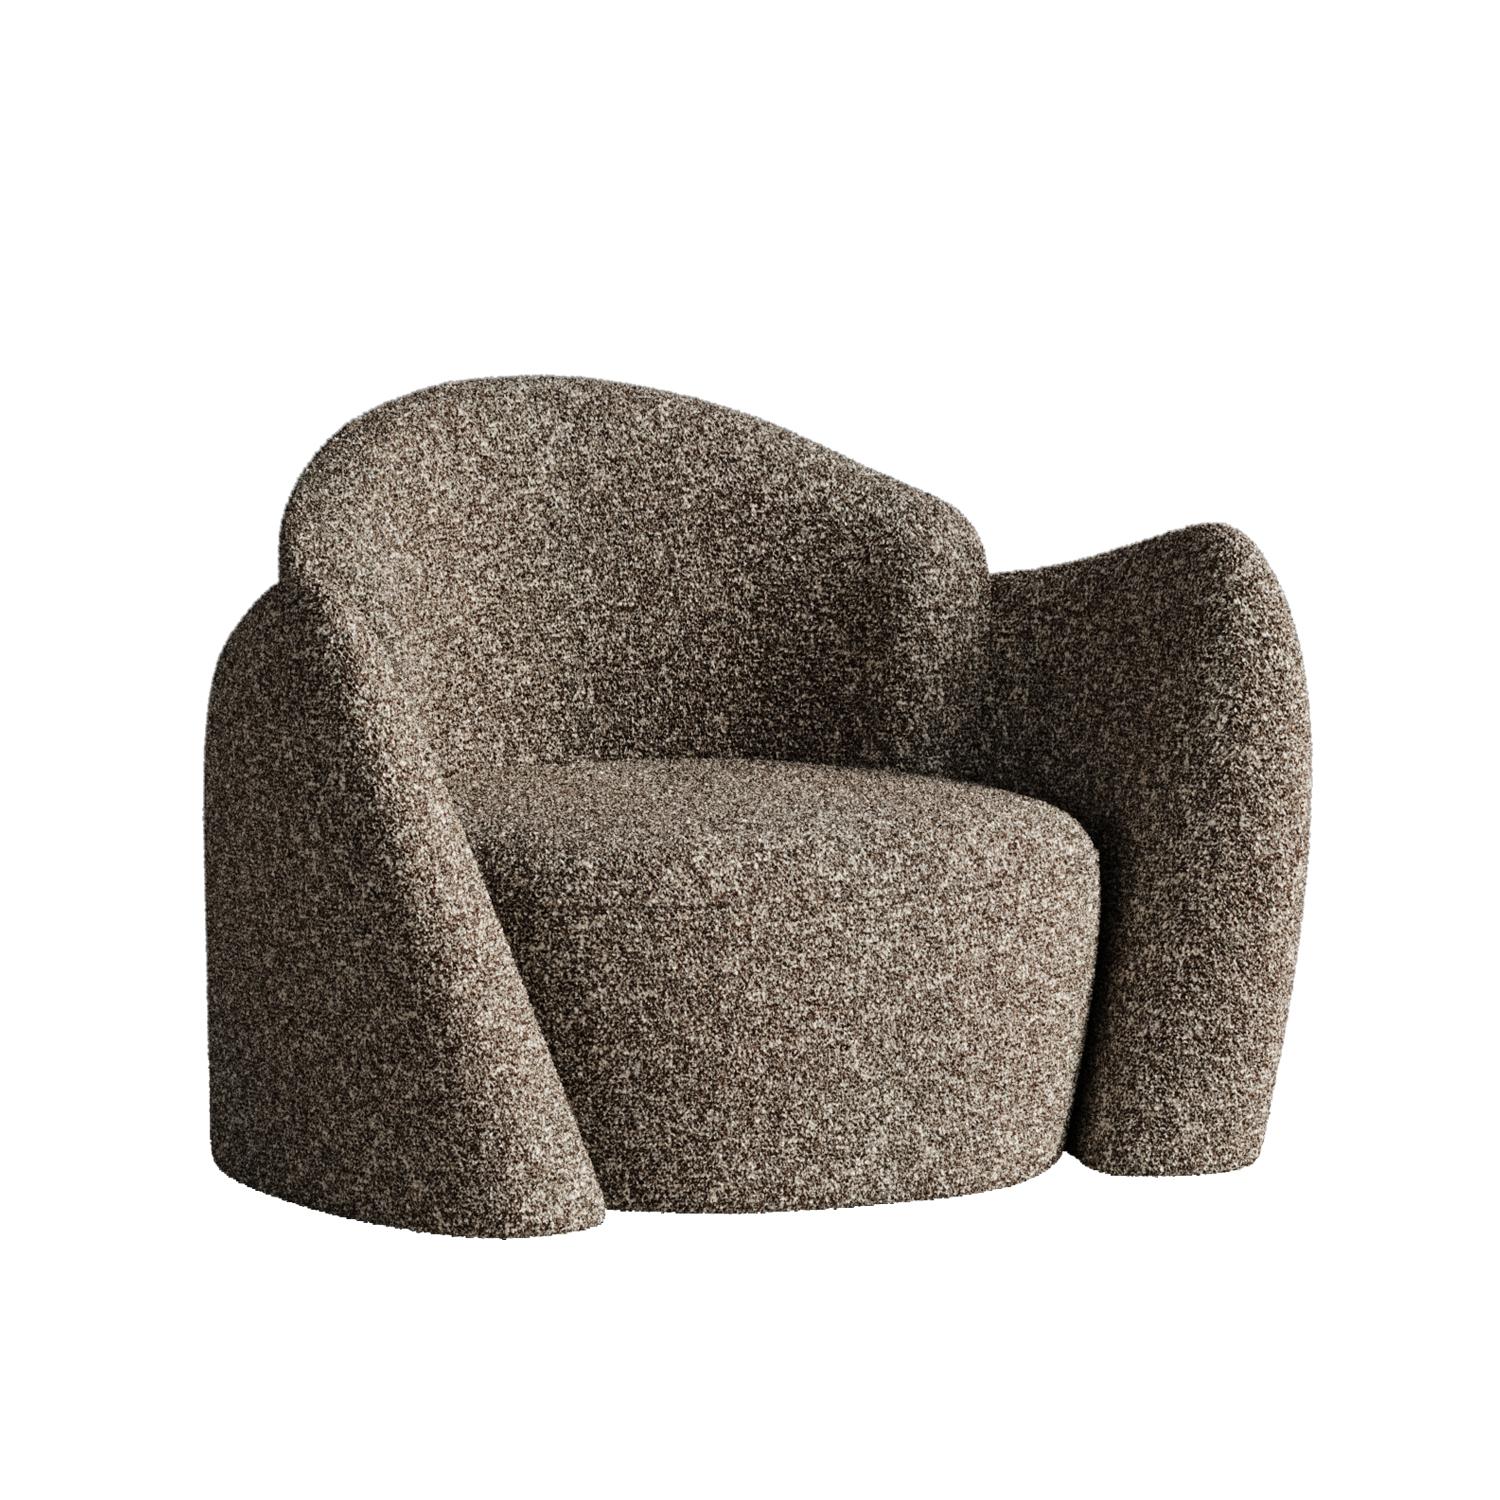 Chaise à mémoire blanche par Plyus Design
Dimensions : D 90 x L 110 x H 80 cm
Matériaux :  Bois, mousse HR, ouate de polyester, tissu d'ameublement

Chaise 